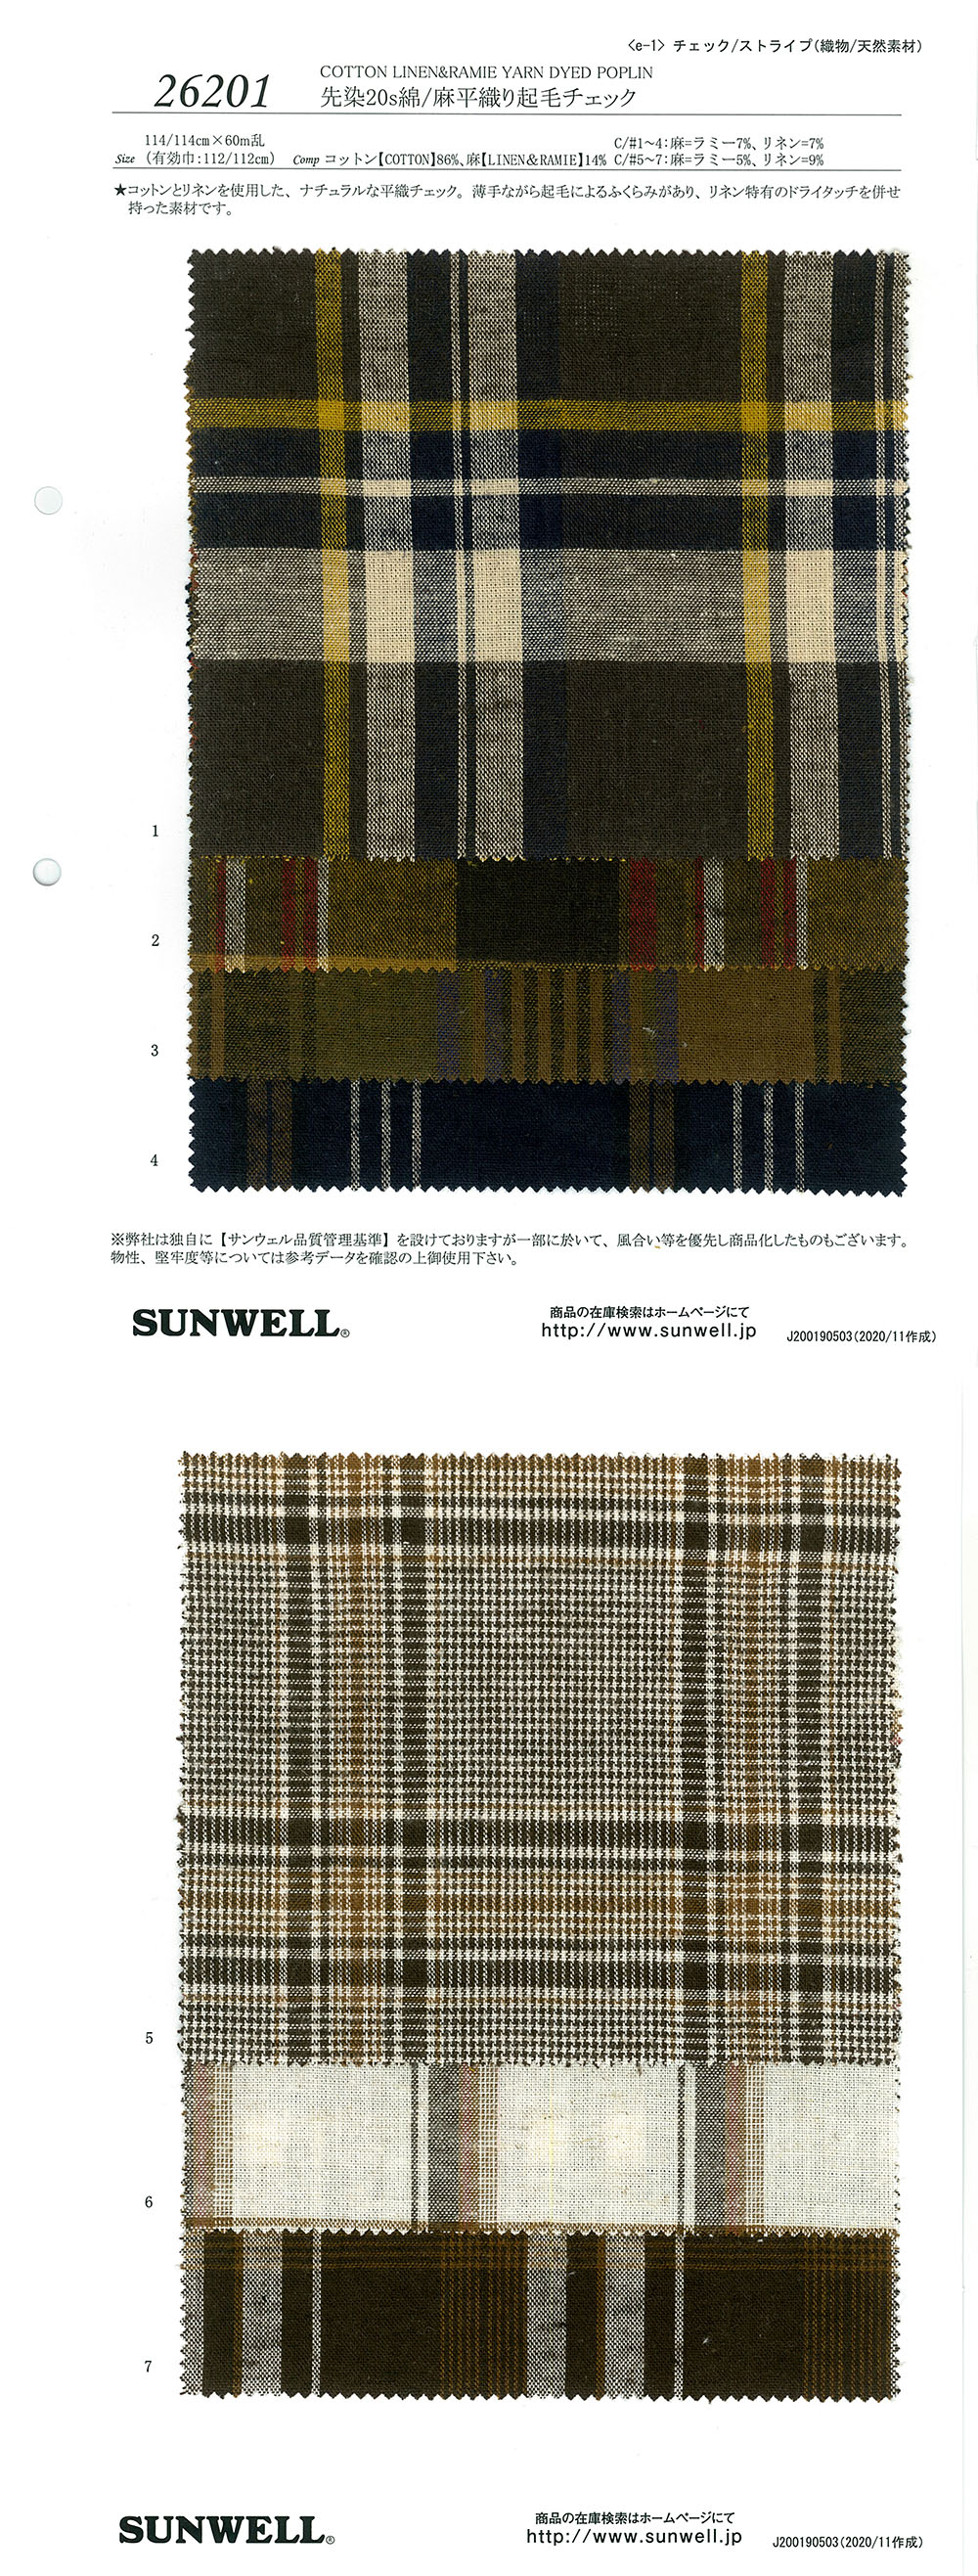 26201 Garngefärbter 20-facher Garnfaden/Leinen-Flachgewebe Fuzzy Check[Textilgewebe] SUNWELL